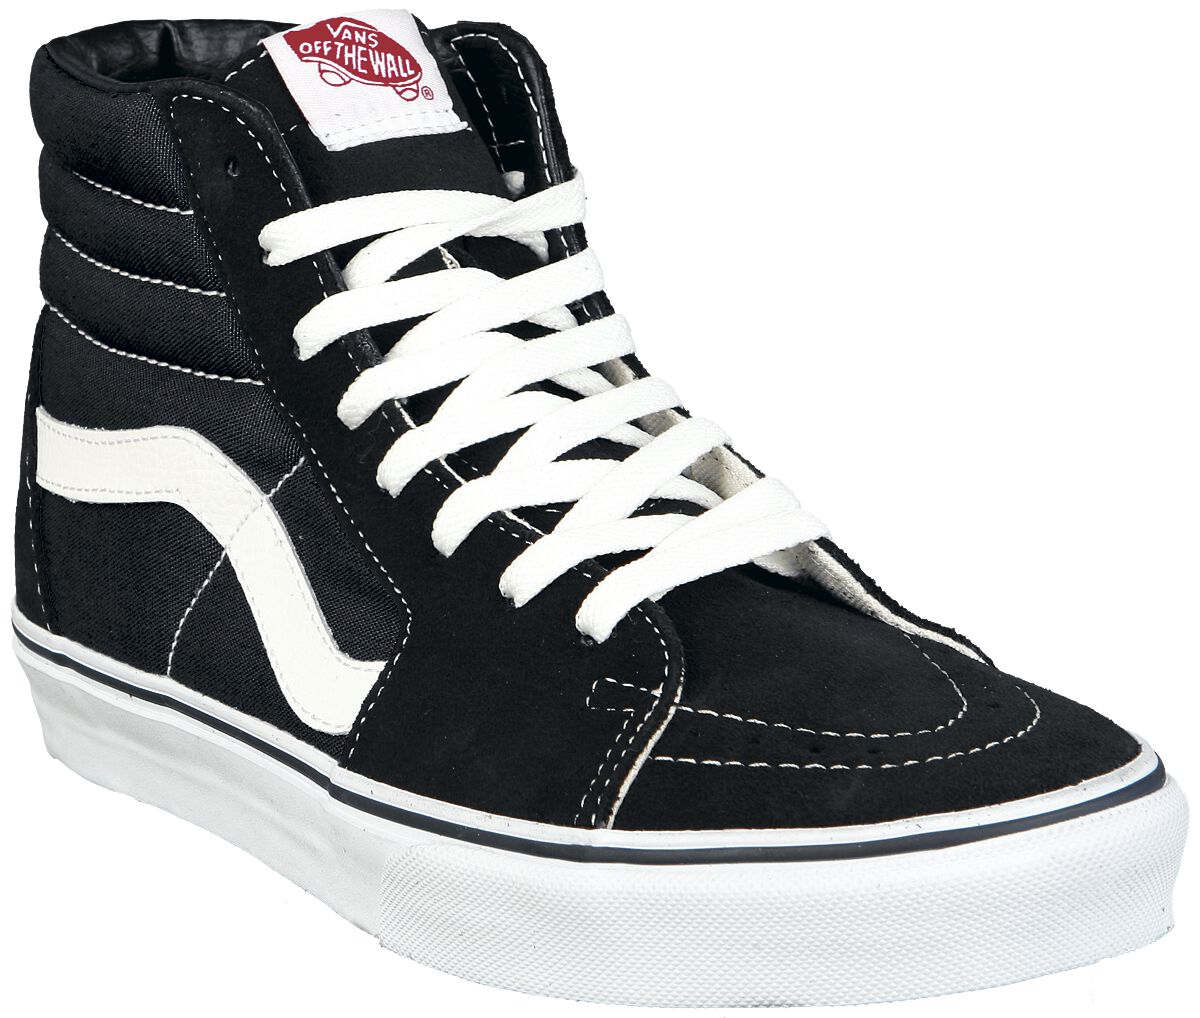 Vans Sneaker high - SK8-Hi - EU37 bis EU47 - Größe EU41 - schwarz/weiß